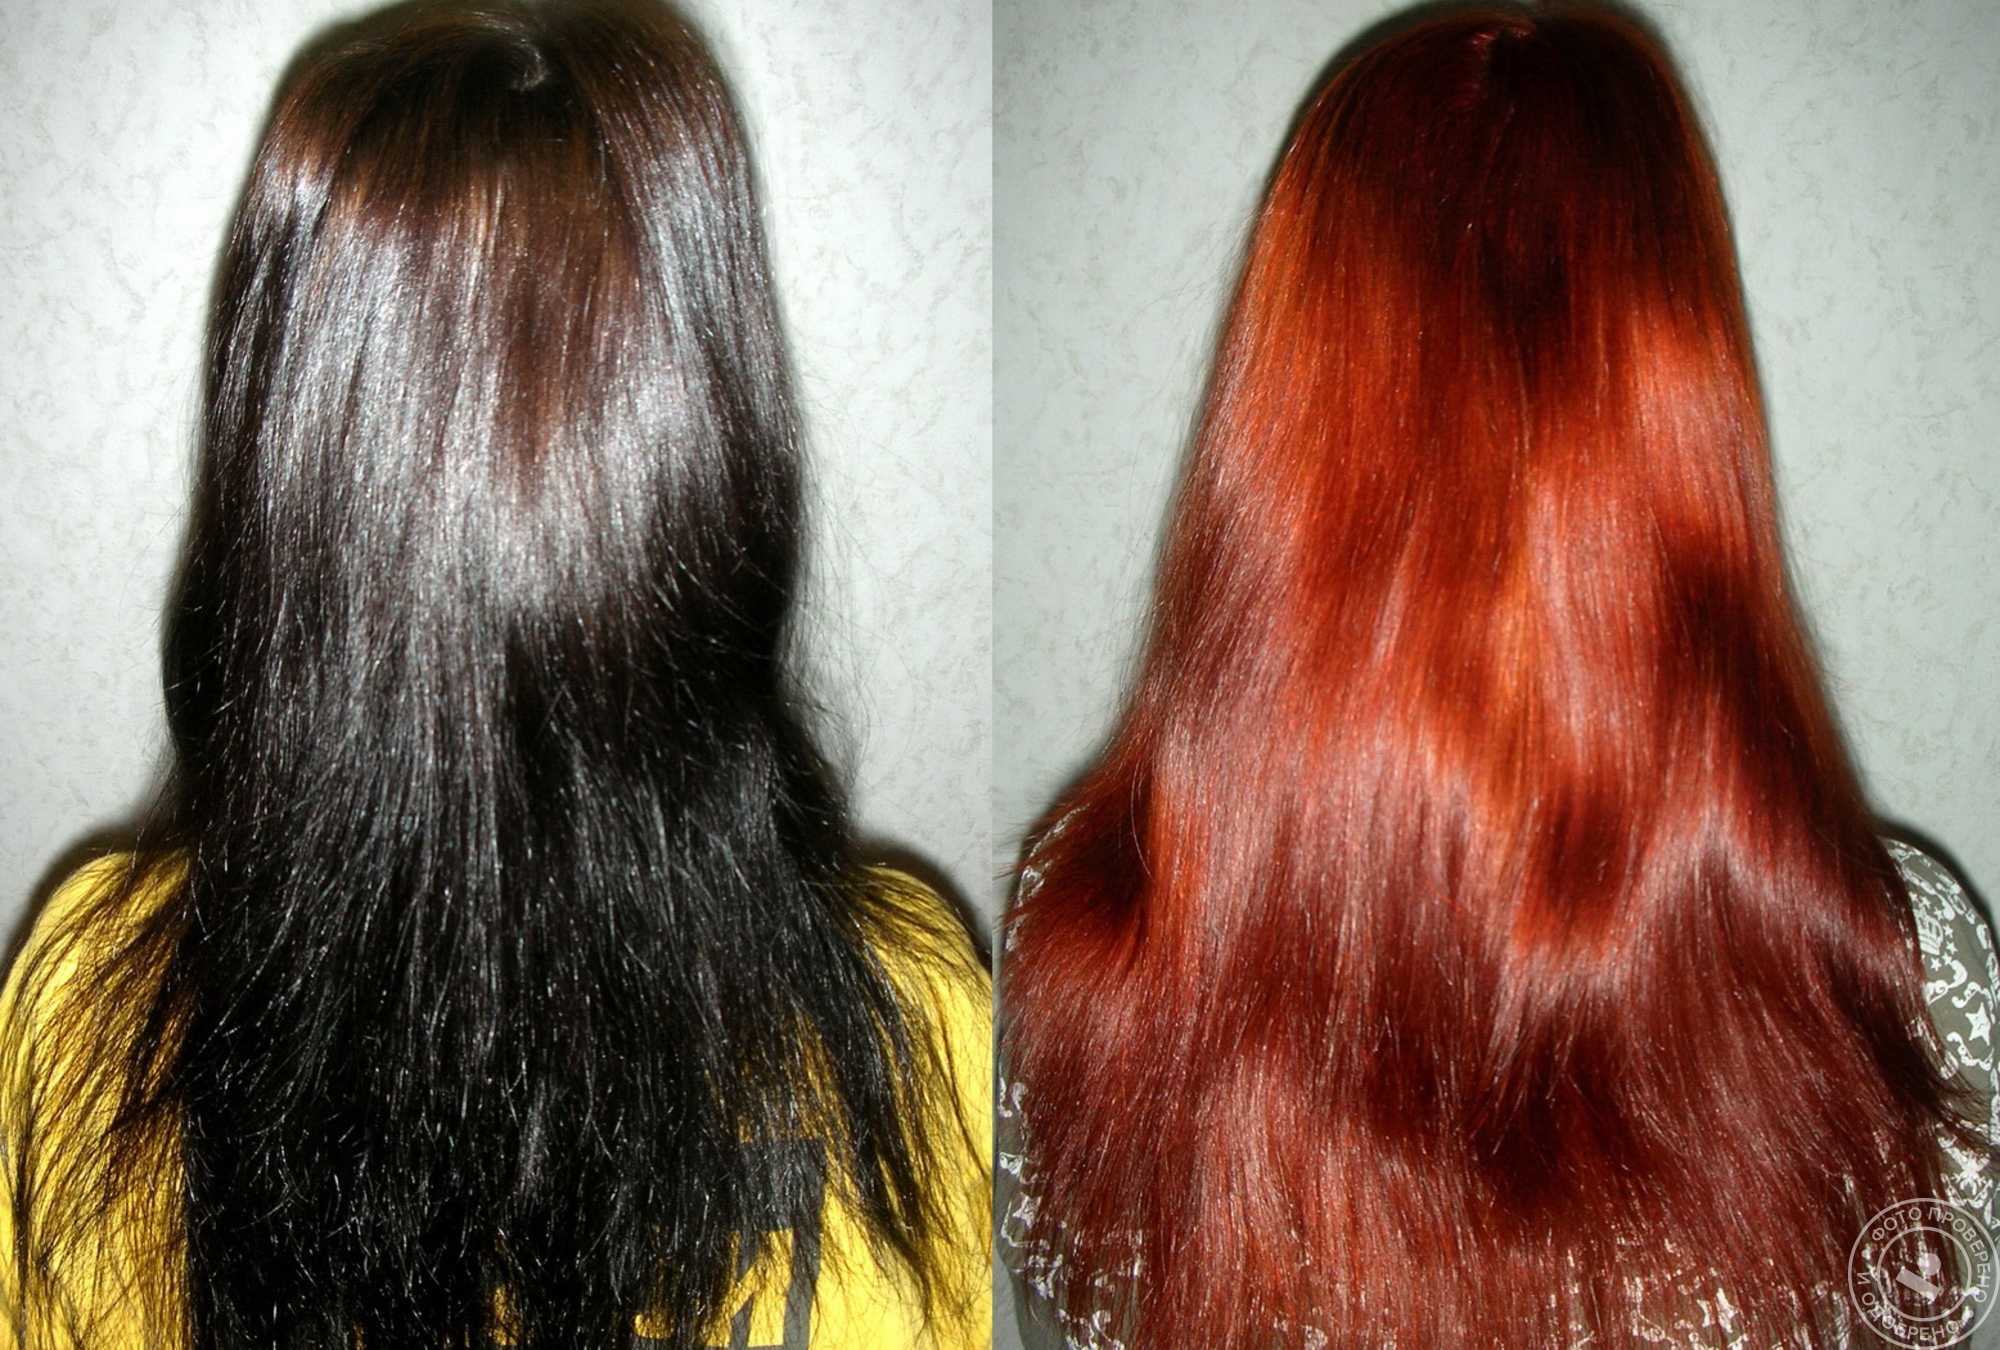 Как убрать половую краску с волос